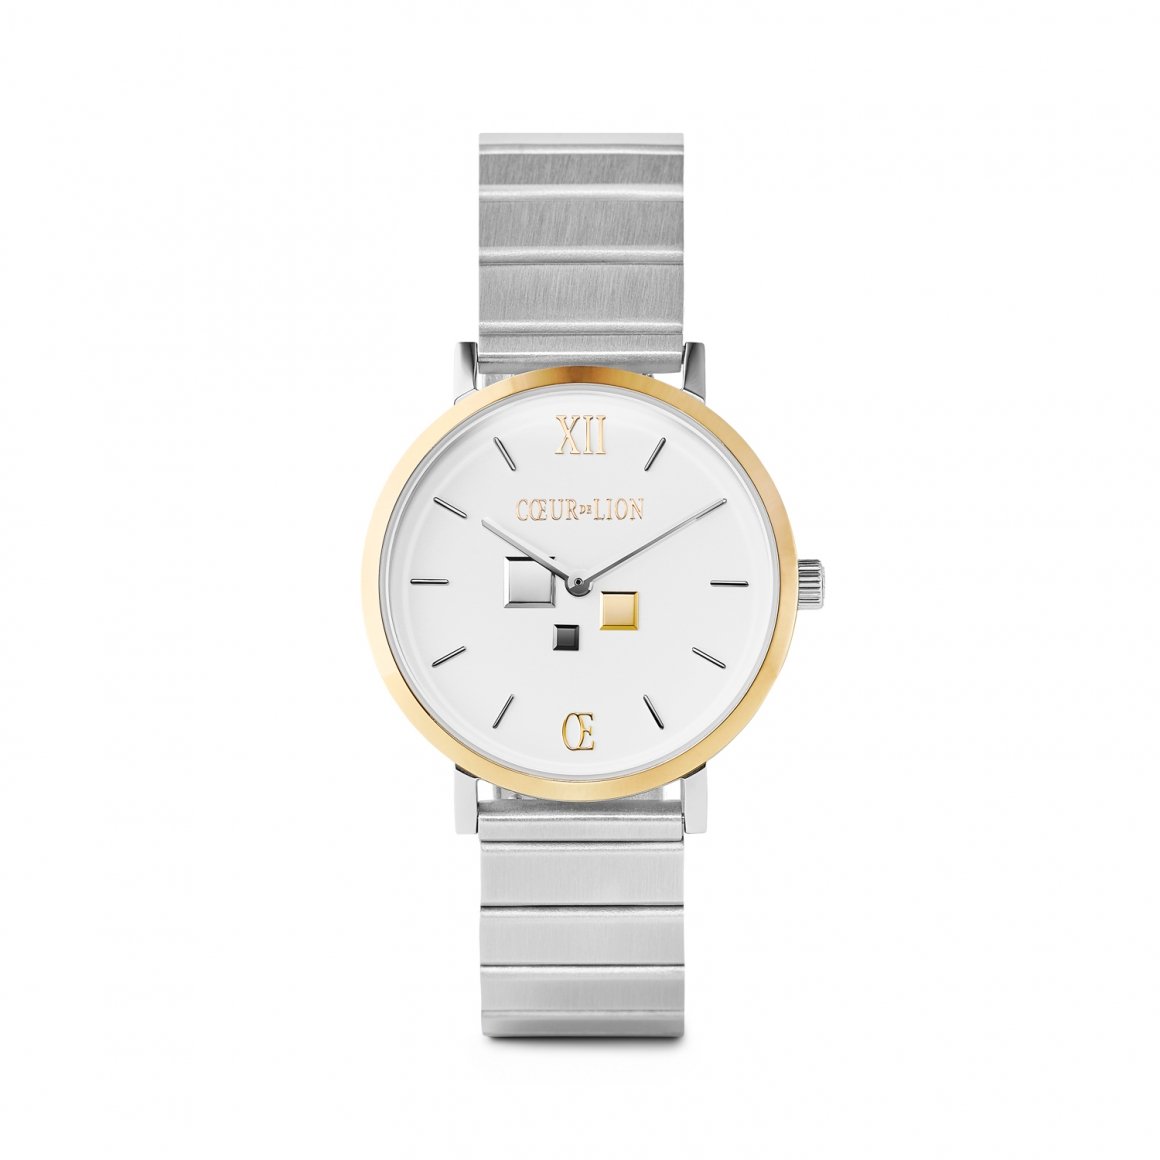 Часы Silver-White<br>Brand: Coeur de Lion, Германия